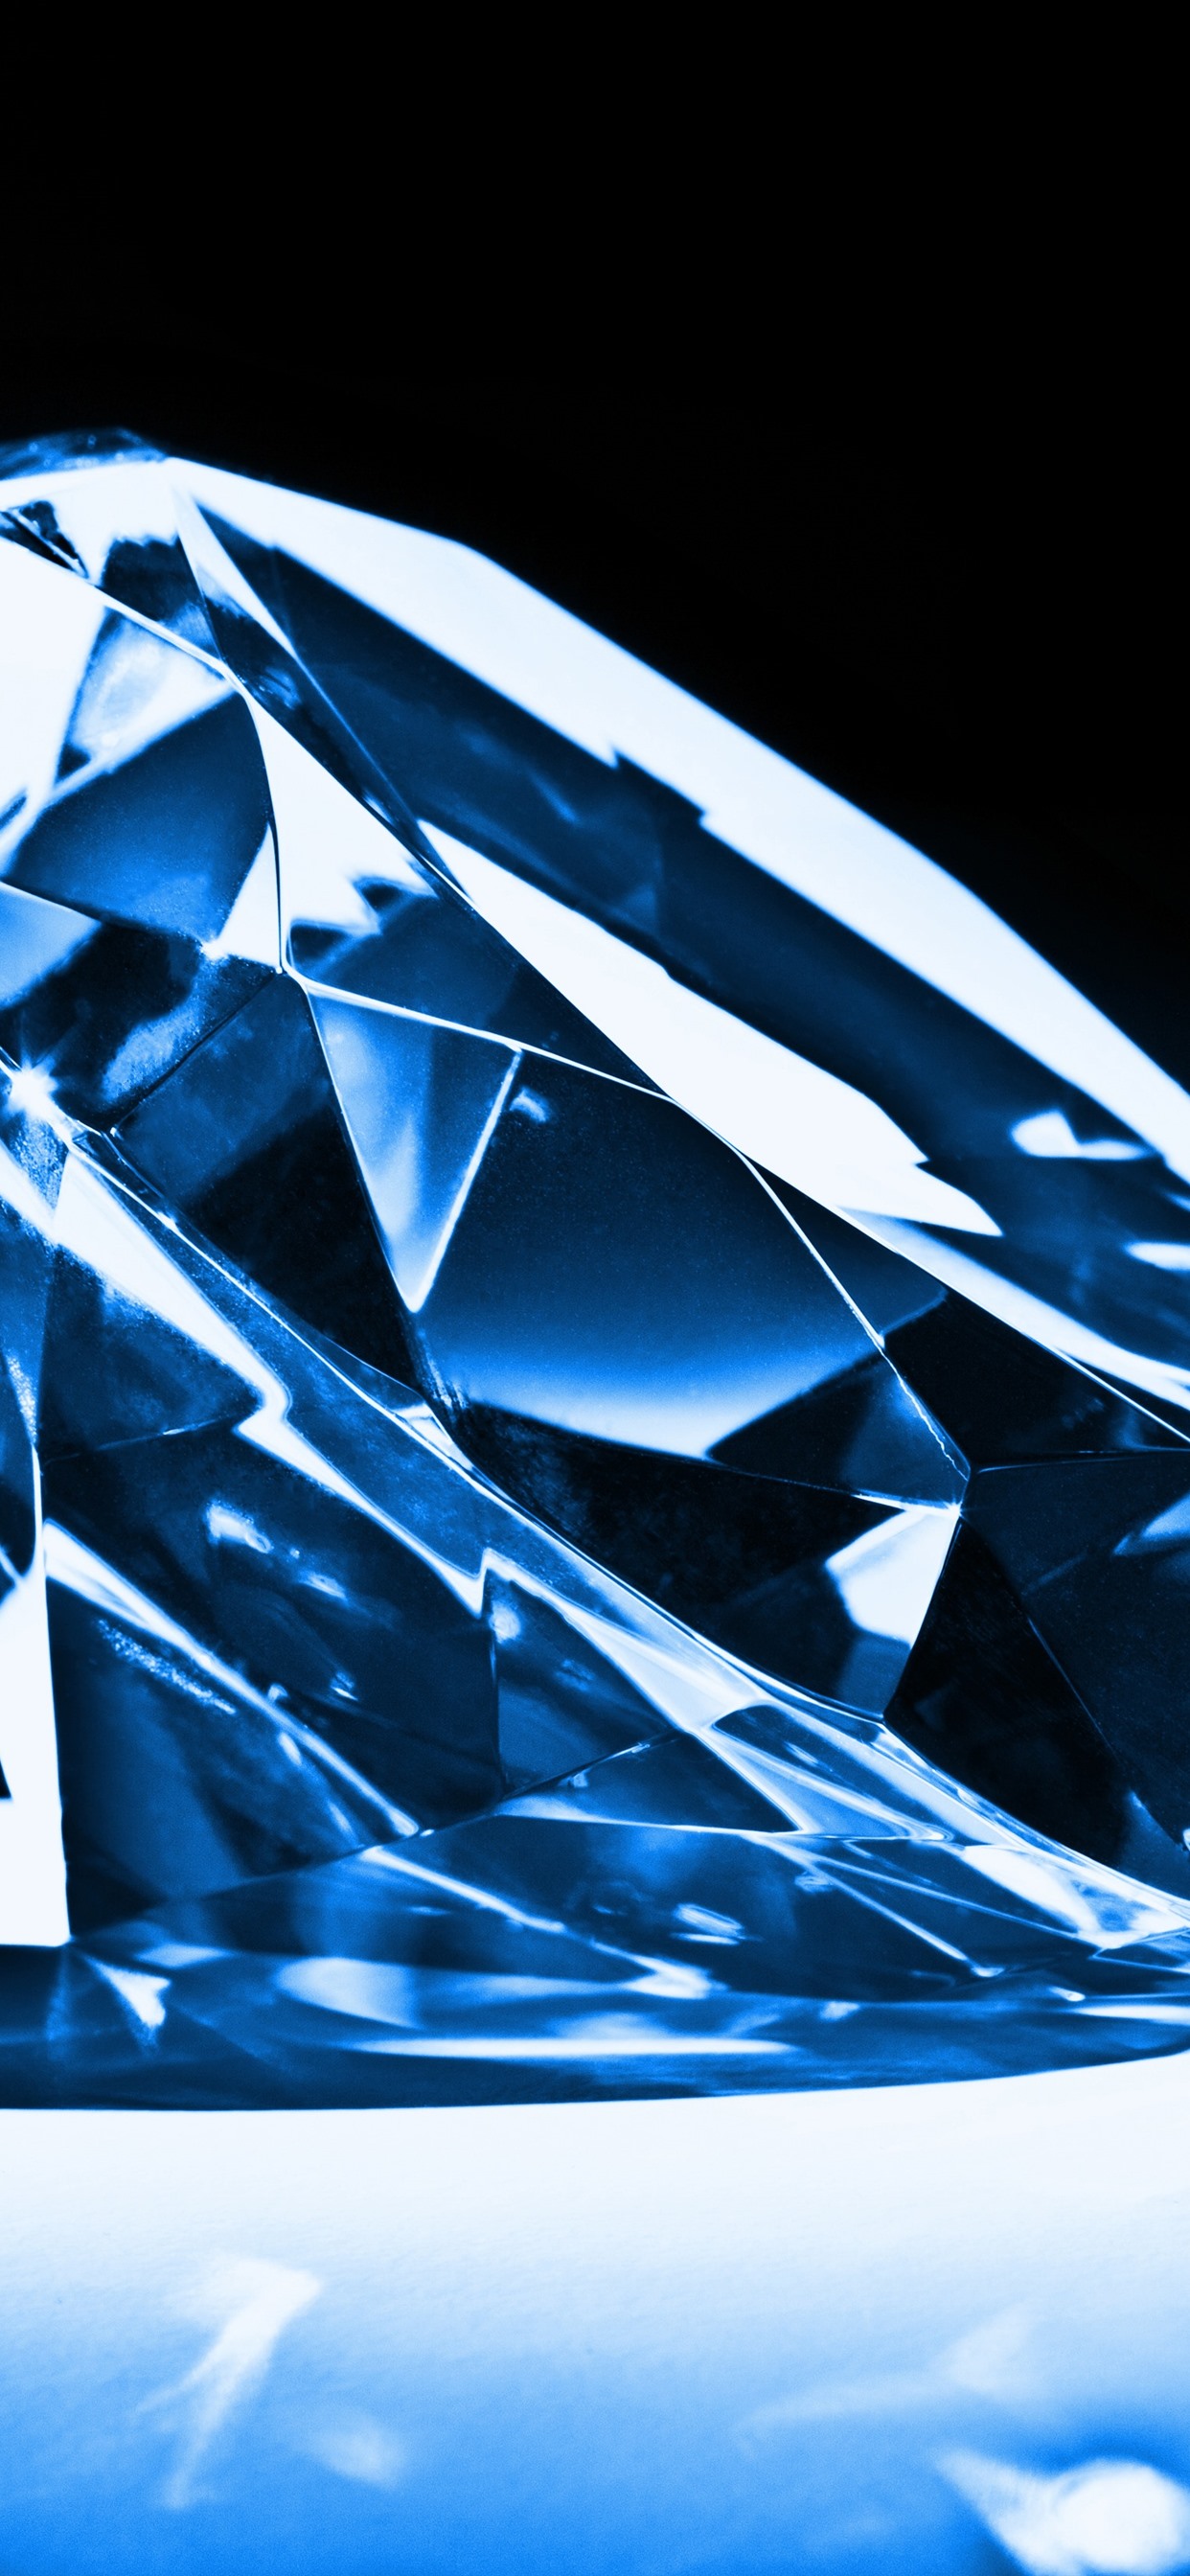 ダイヤモンド壁紙,青い,コバルトブルー,ダイヤモンド,エレクトリックブルー,パターン